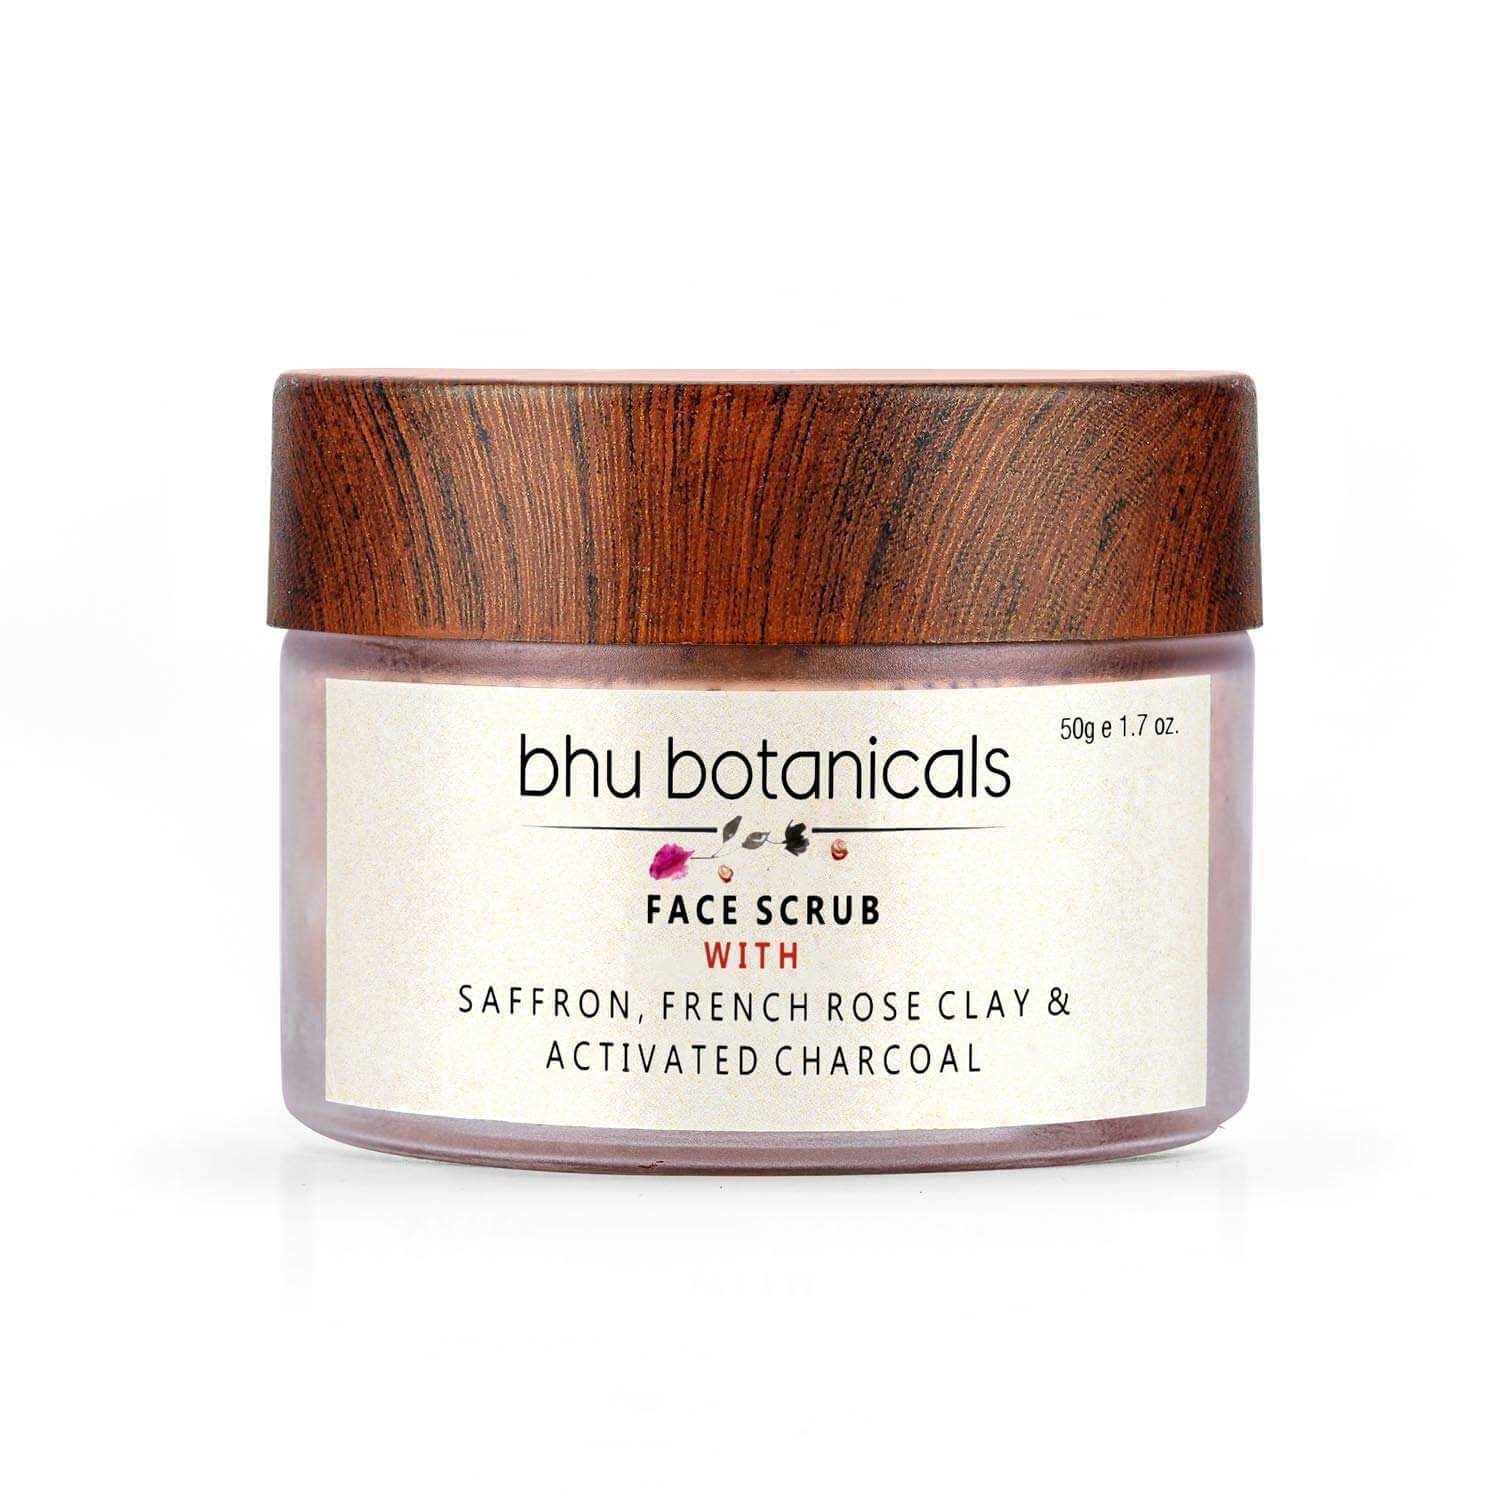 bhu botanicals Skin Brightening Face Scrub 